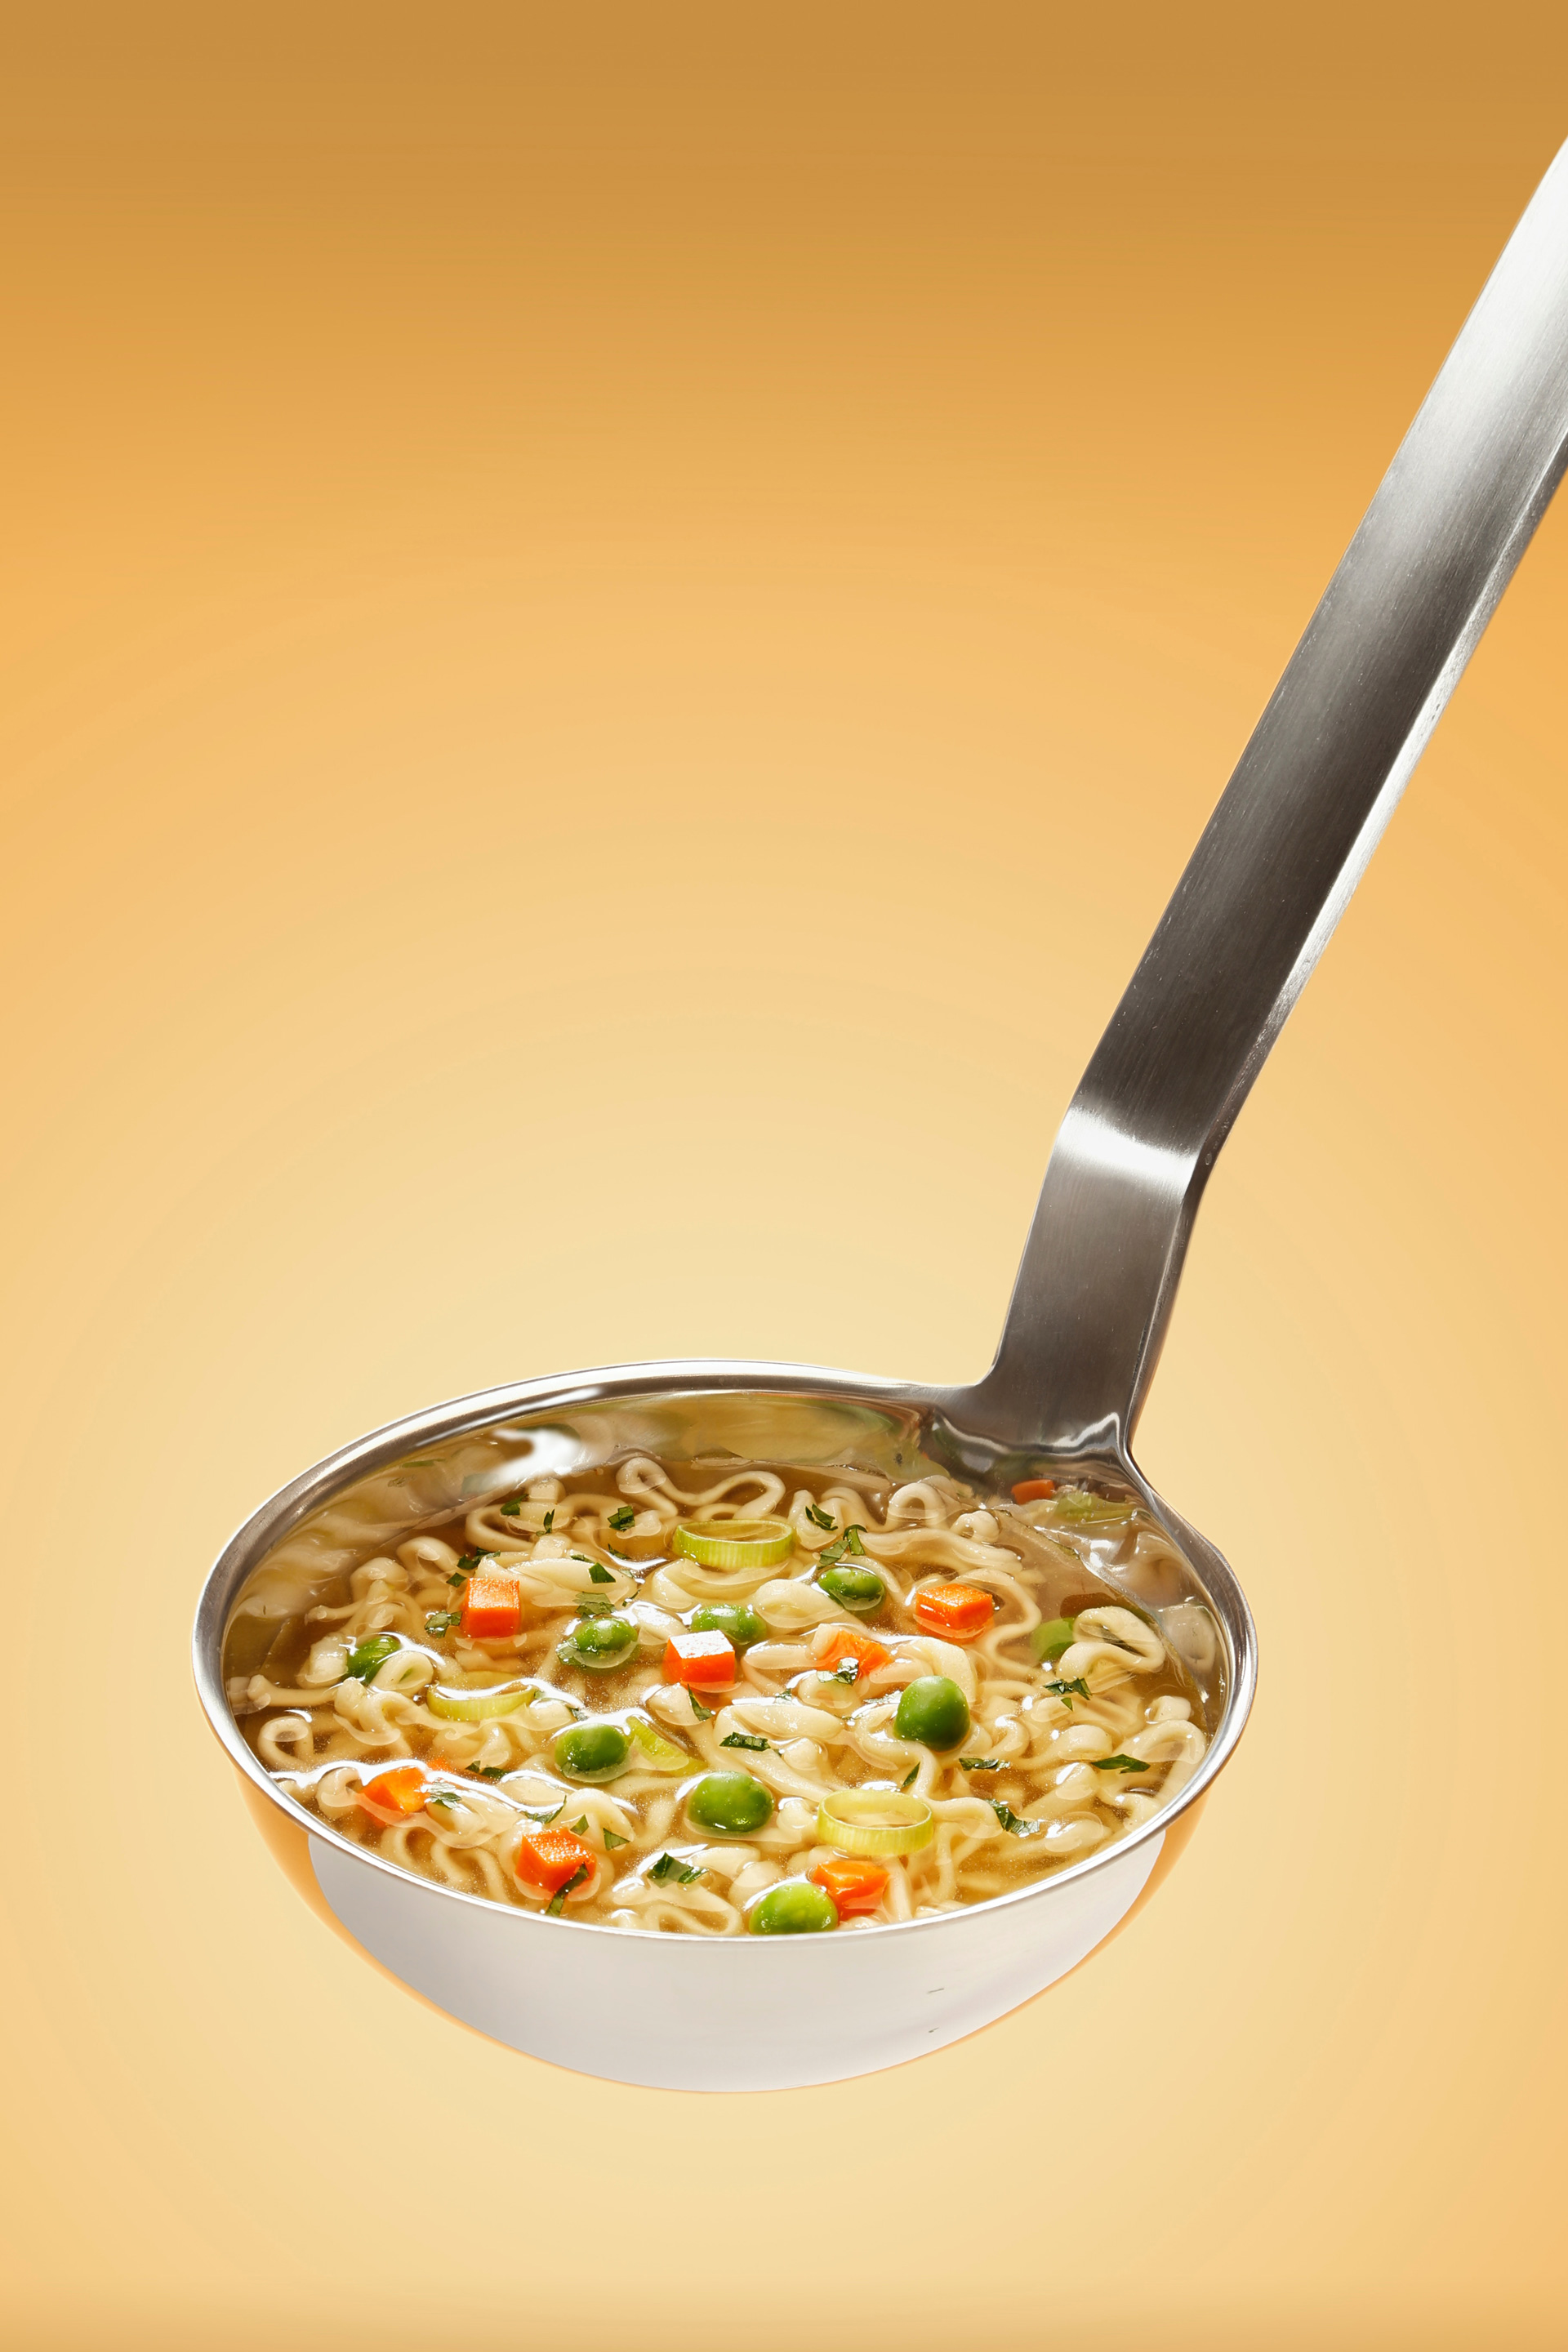 Pyszna zupa | Żłobek Małe Chmurki - Dieta